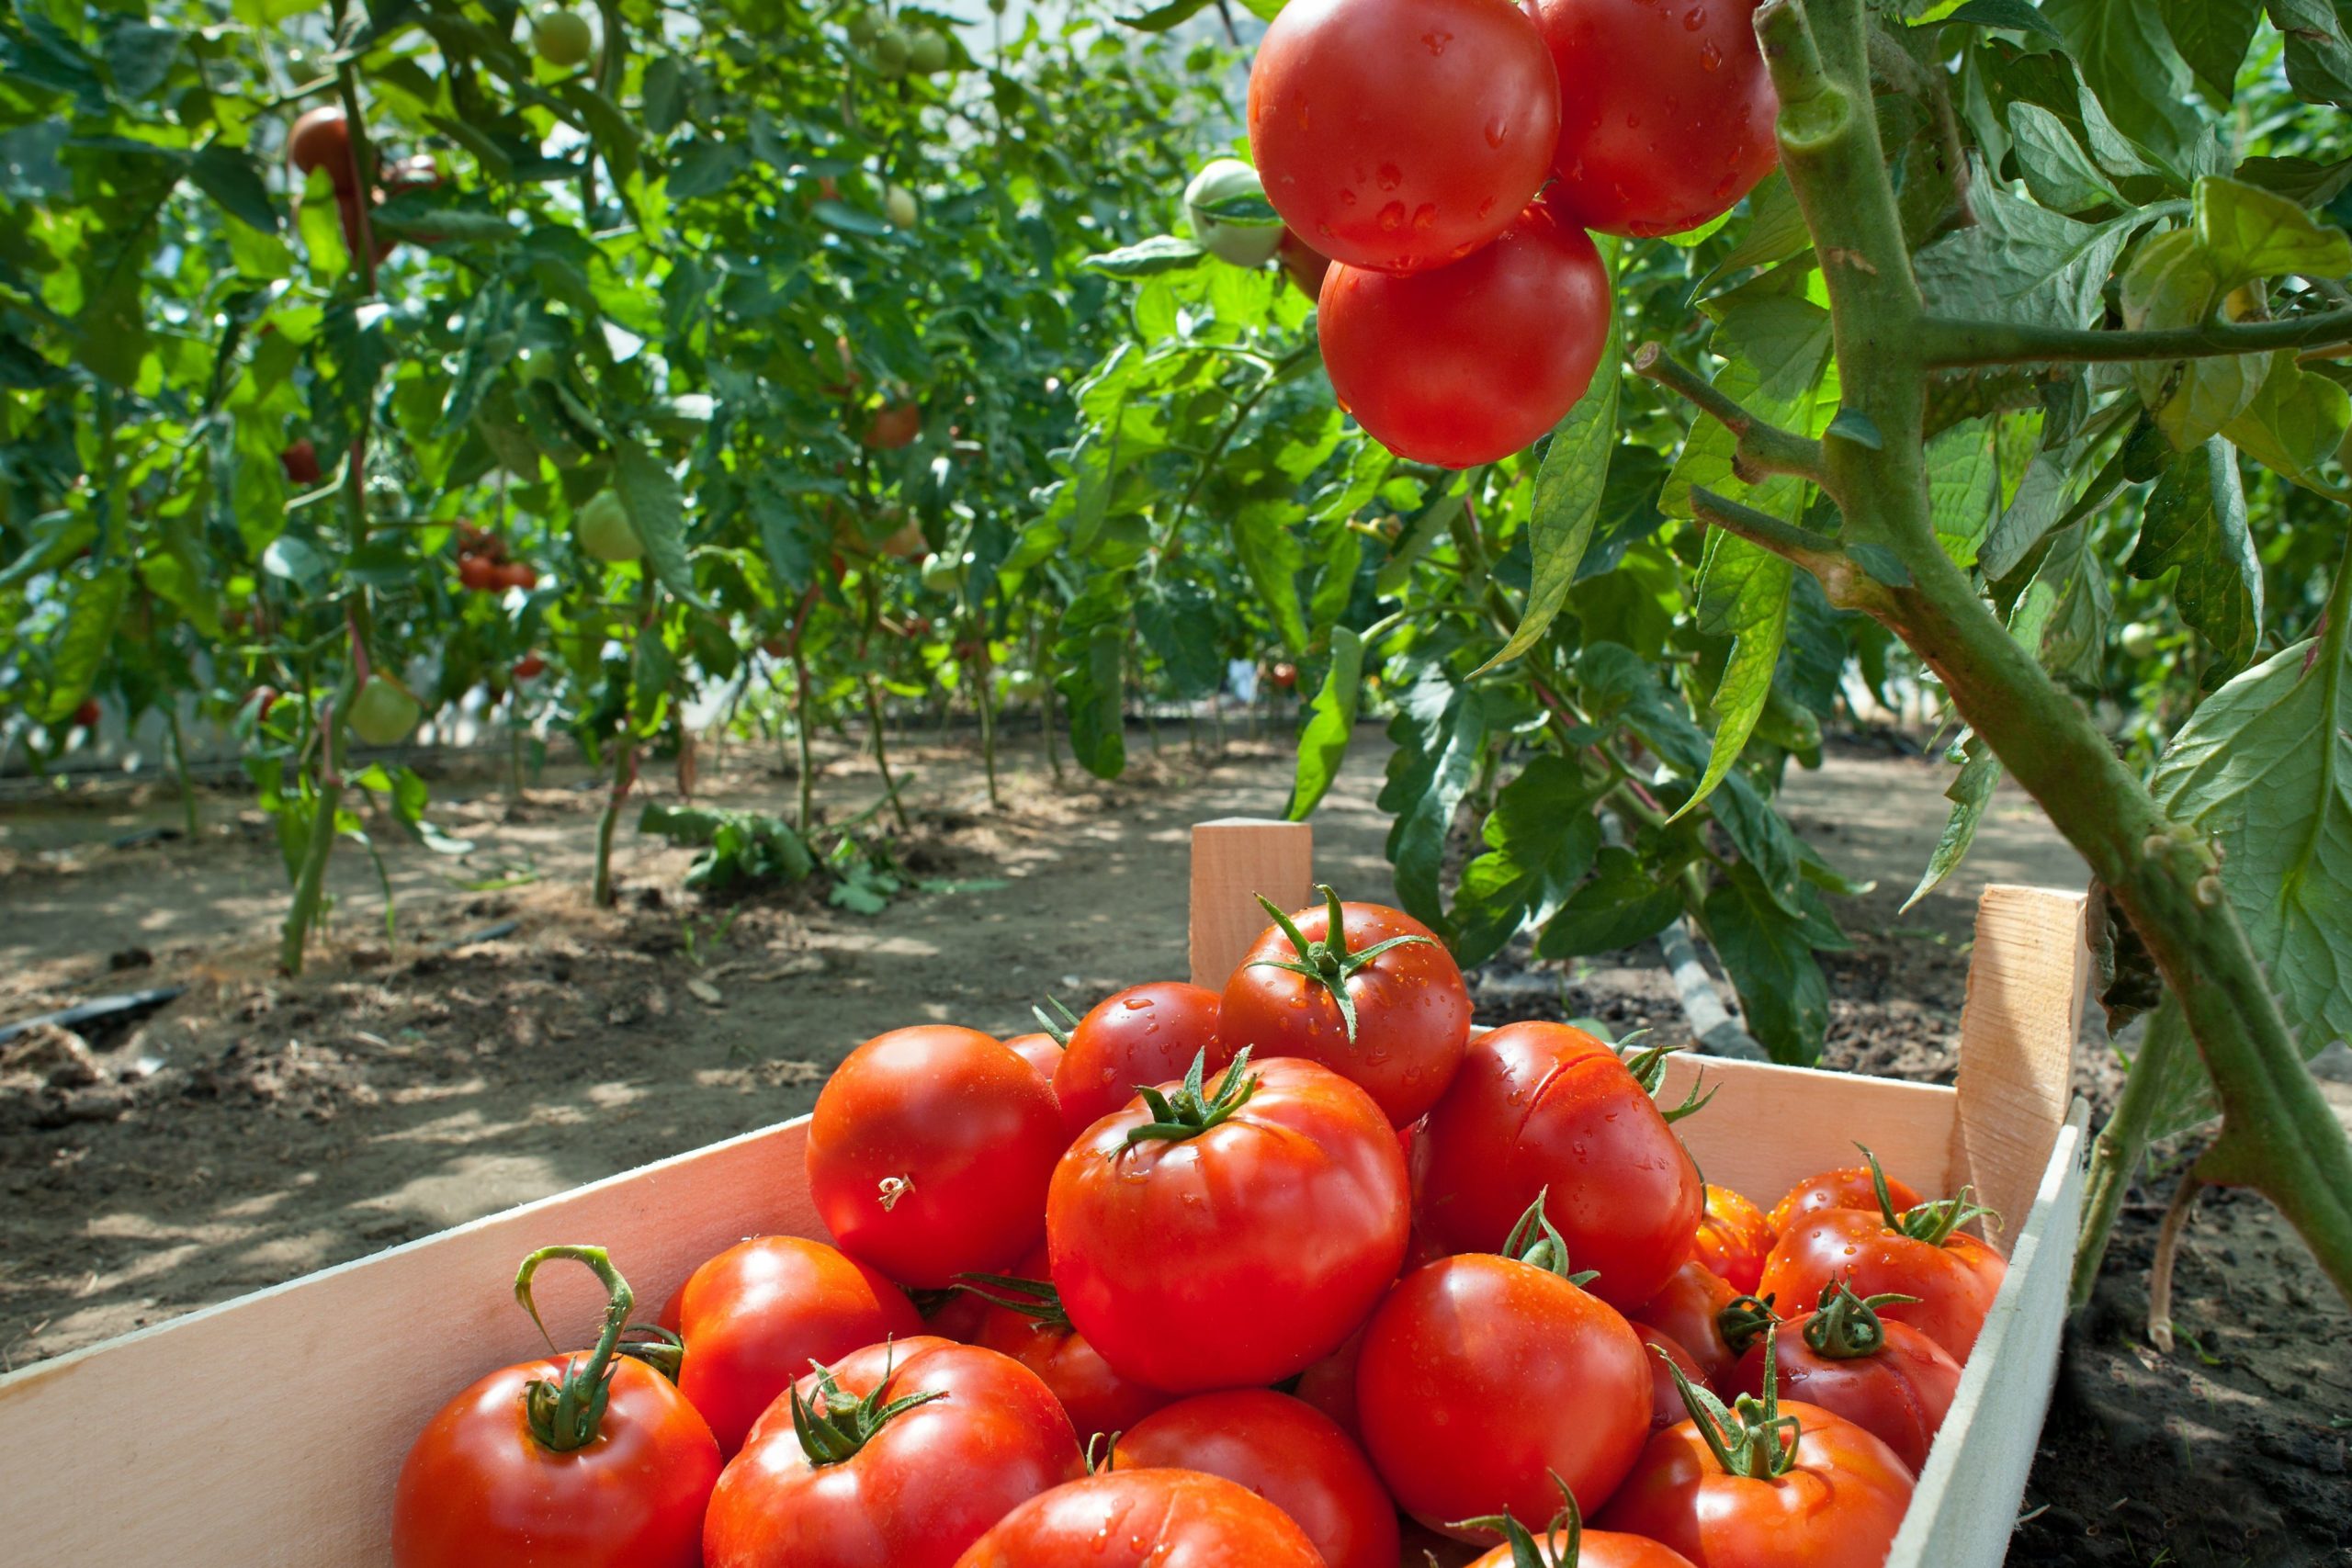  Заряжаем томаты на быстрый рост: в июне кидаем 1 горсть под кусты 